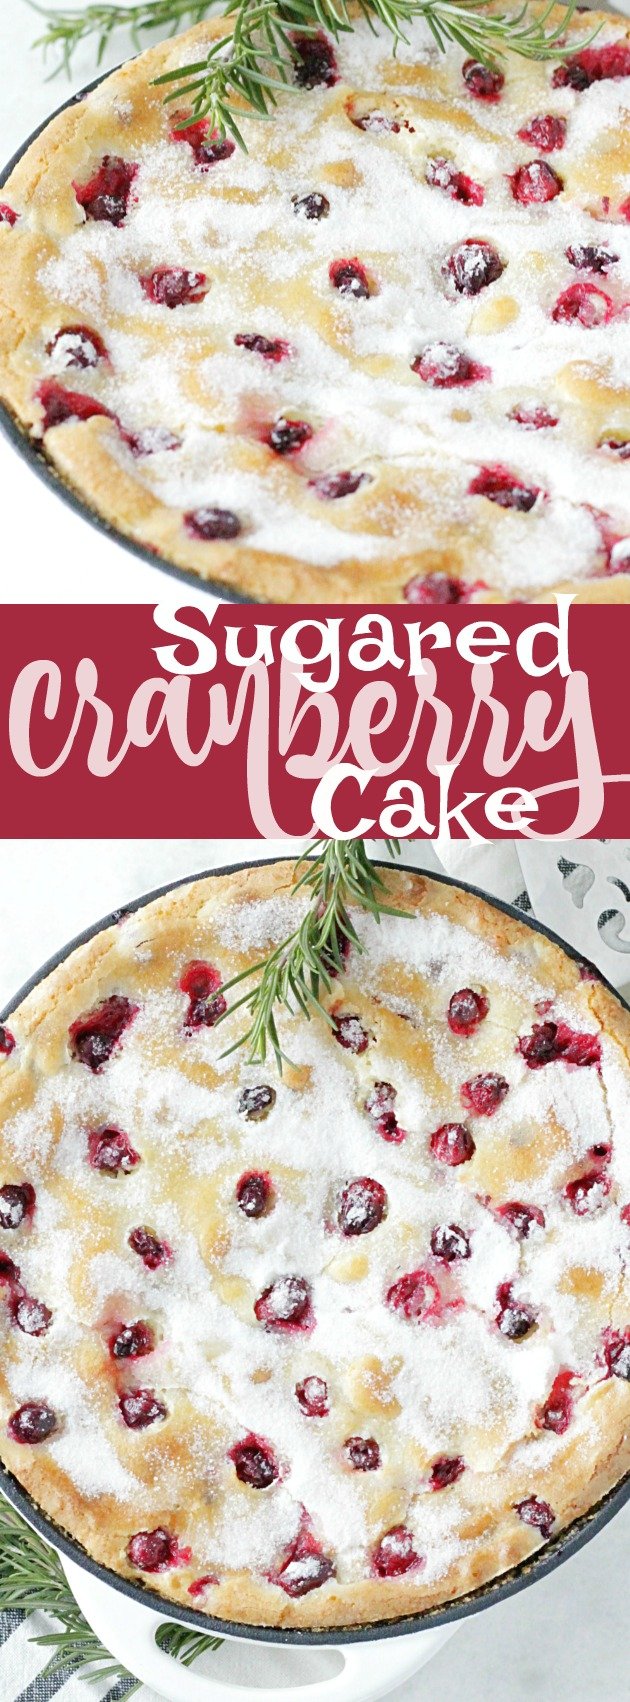 Sugared Cranberry Cake